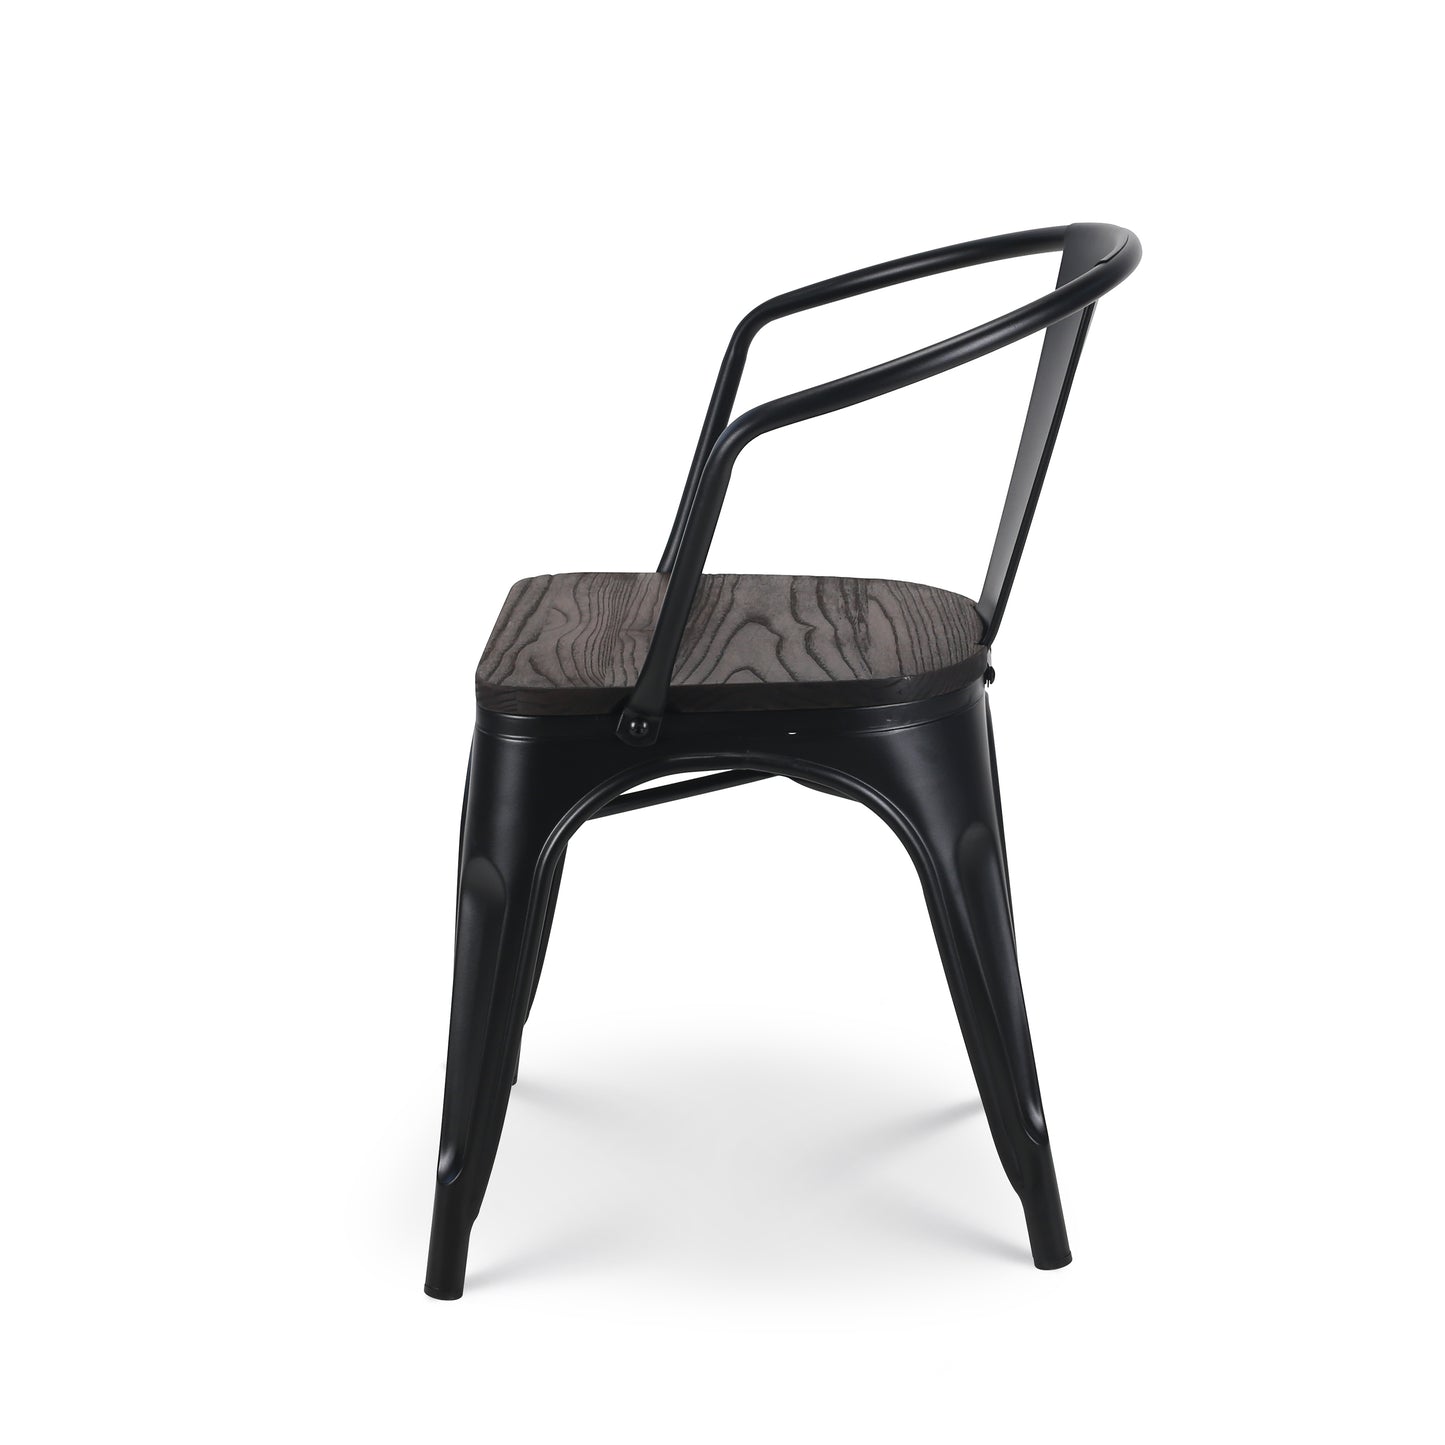 Lot de 4 chaises en métal noir mat style industriel avec assise en bois foncé - Avec accoudoirs